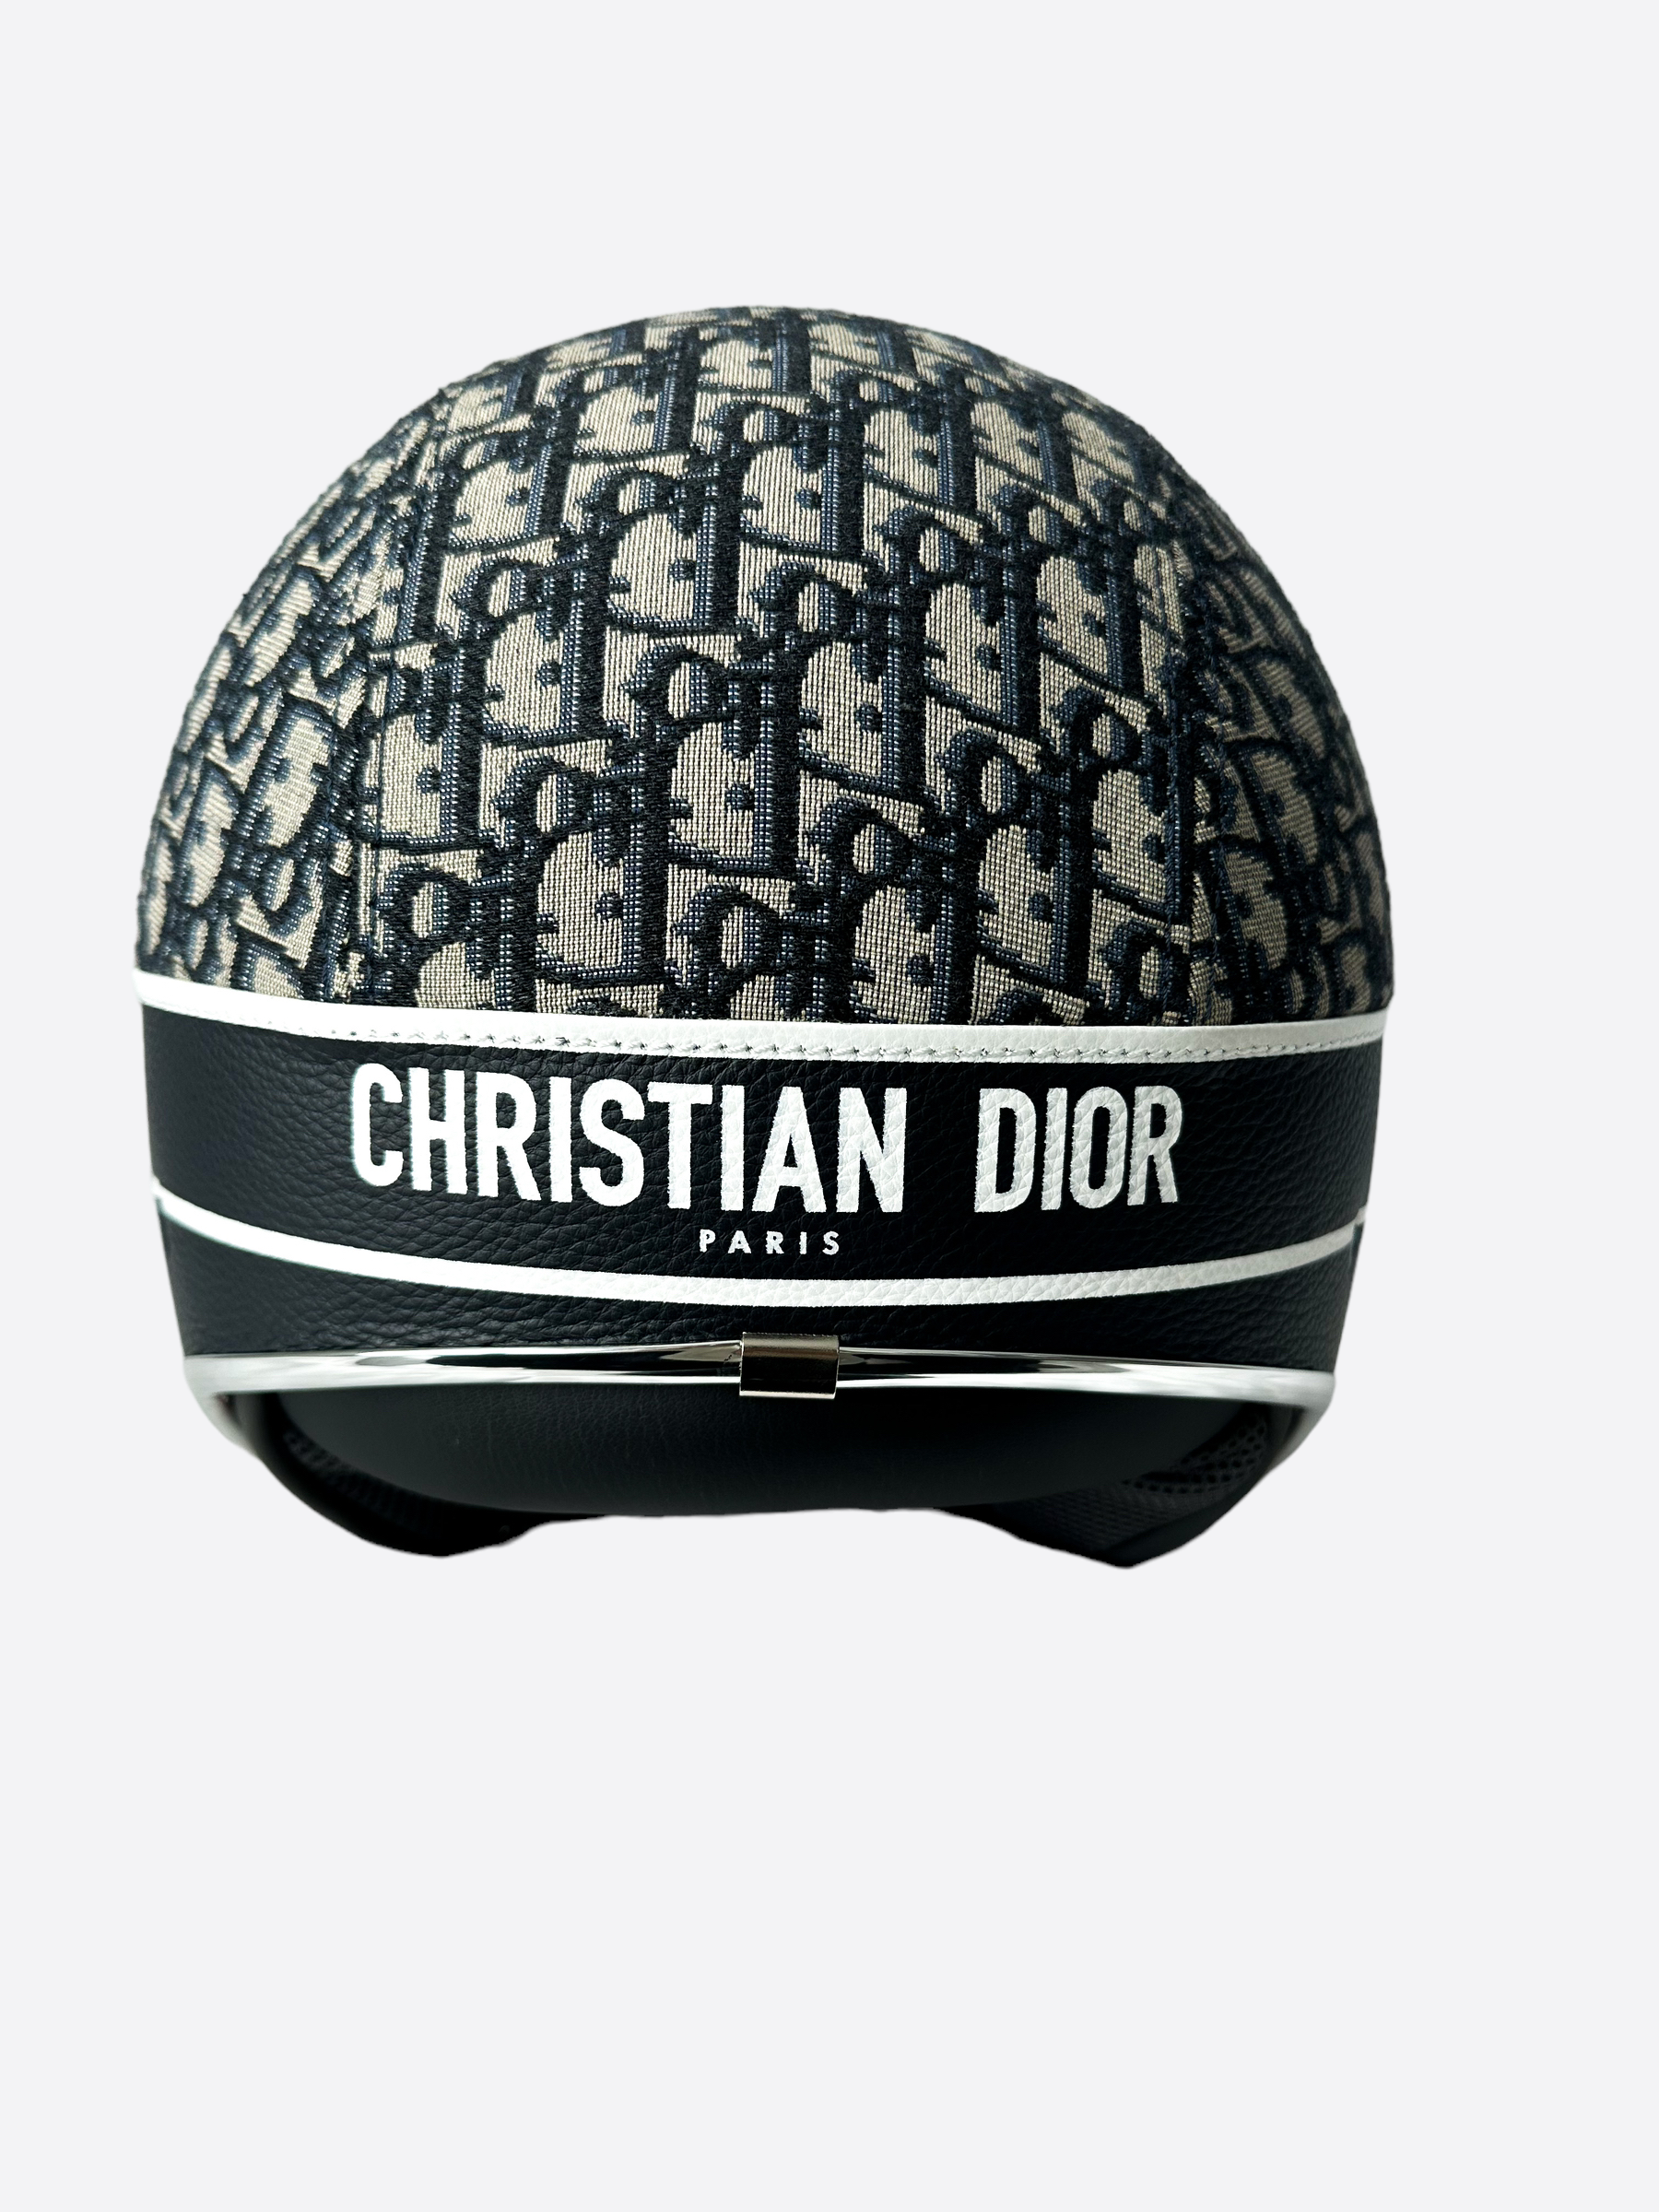 Vespa 946 Christian Dior  Sandras Closet